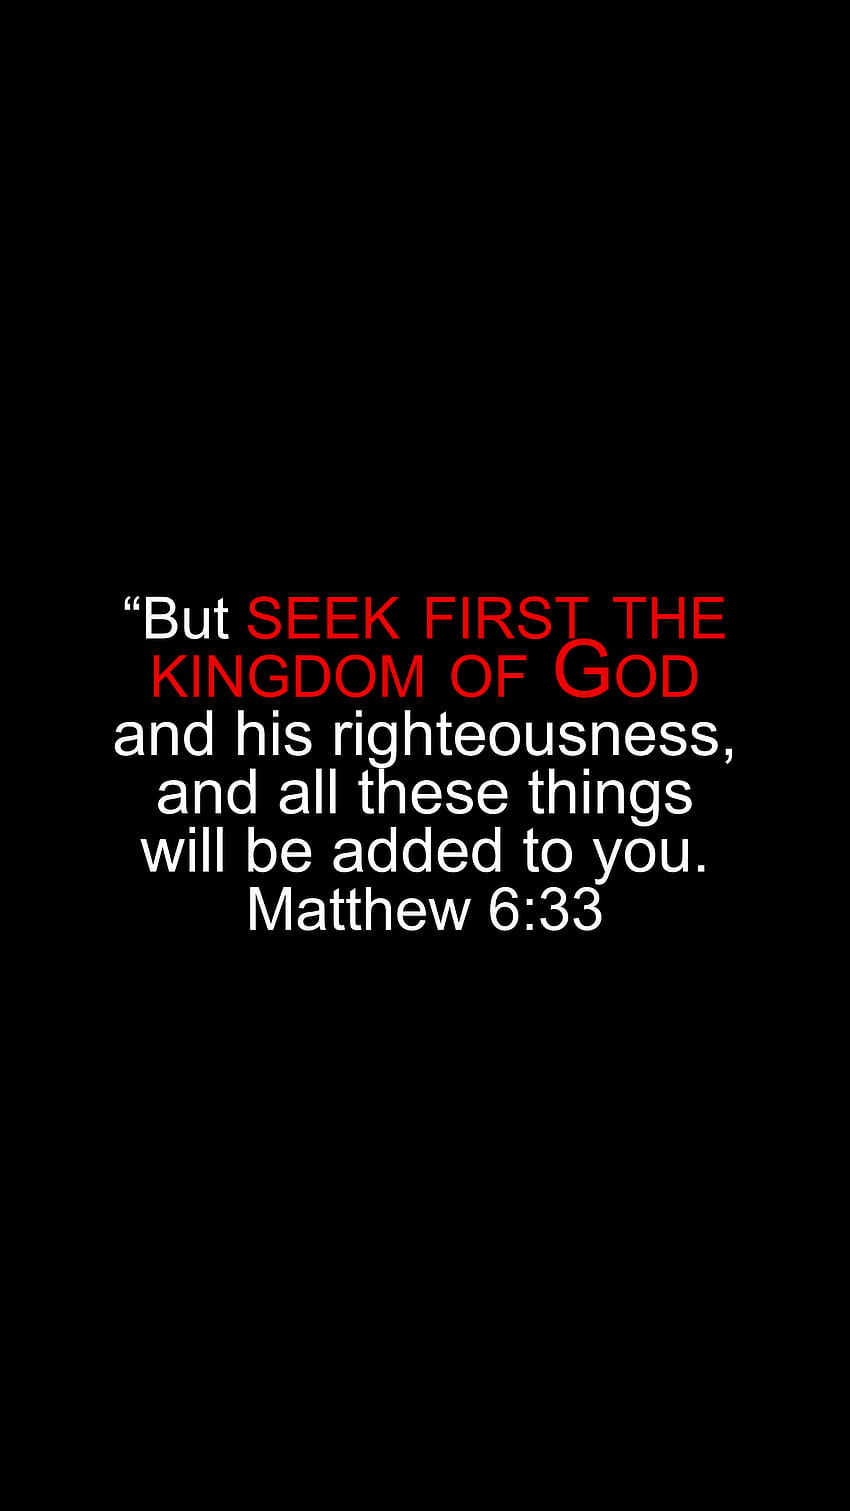 Matius 6:33, Yesus, Alkitab, Kristen, Carilah yang pertama, kebenaran, ayat Alkitab, Tuhan, kerajaan wallpaper ponsel HD